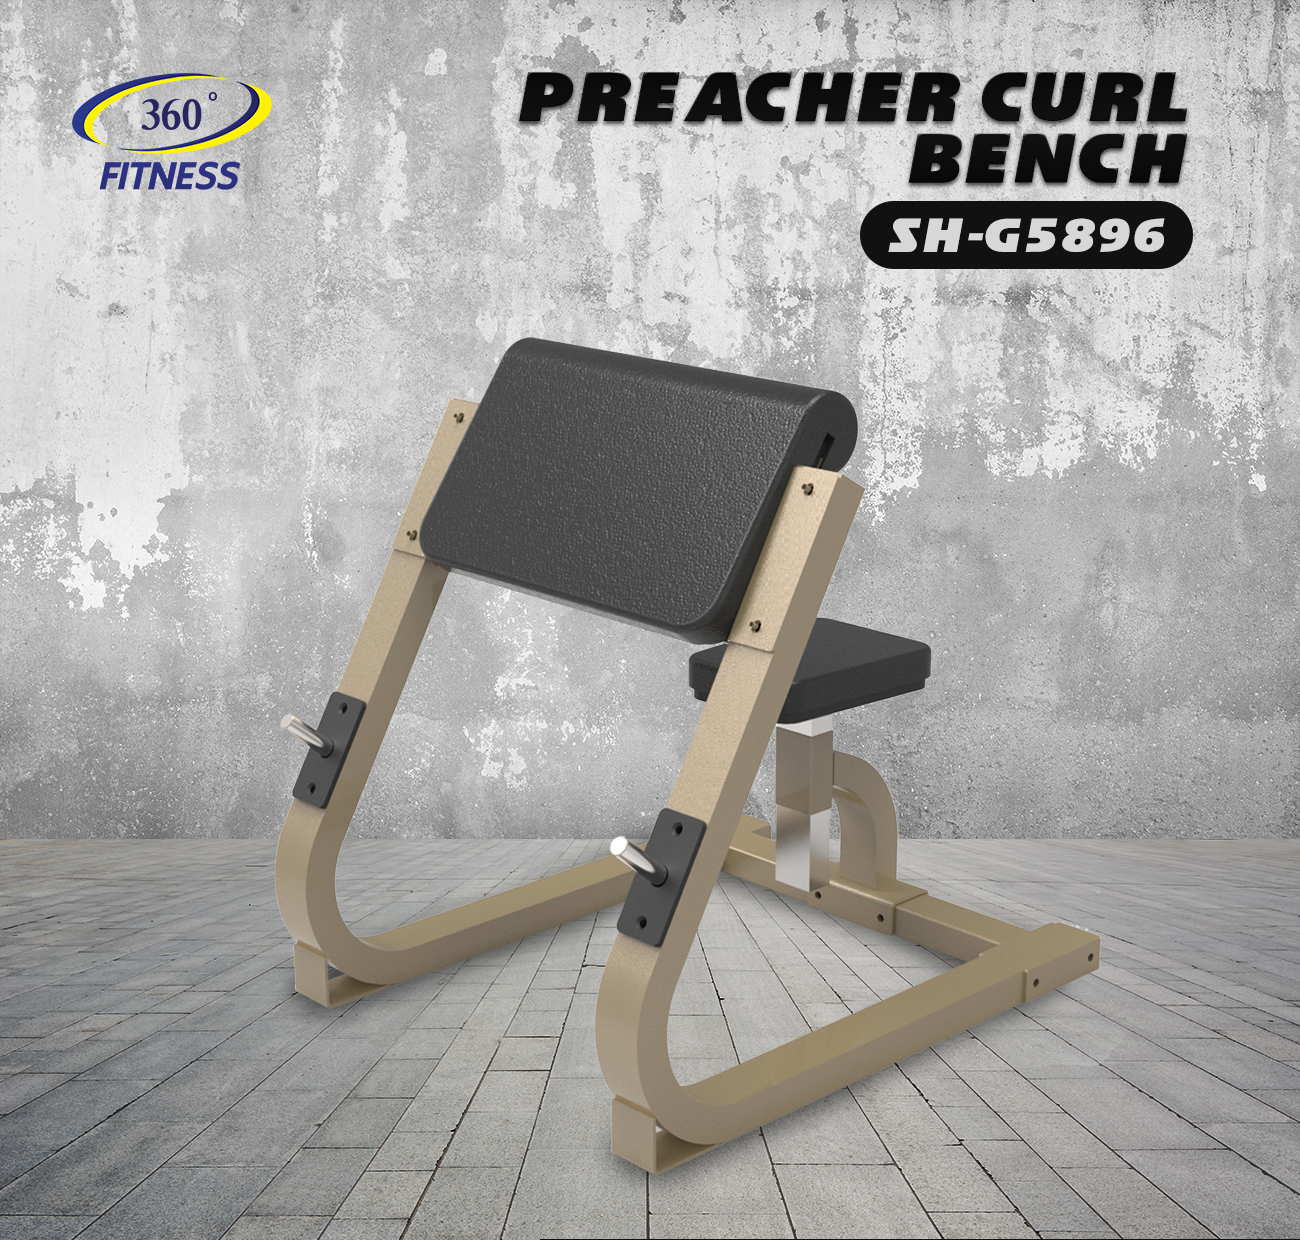 Preacher Curl Bench (SH-G5896)